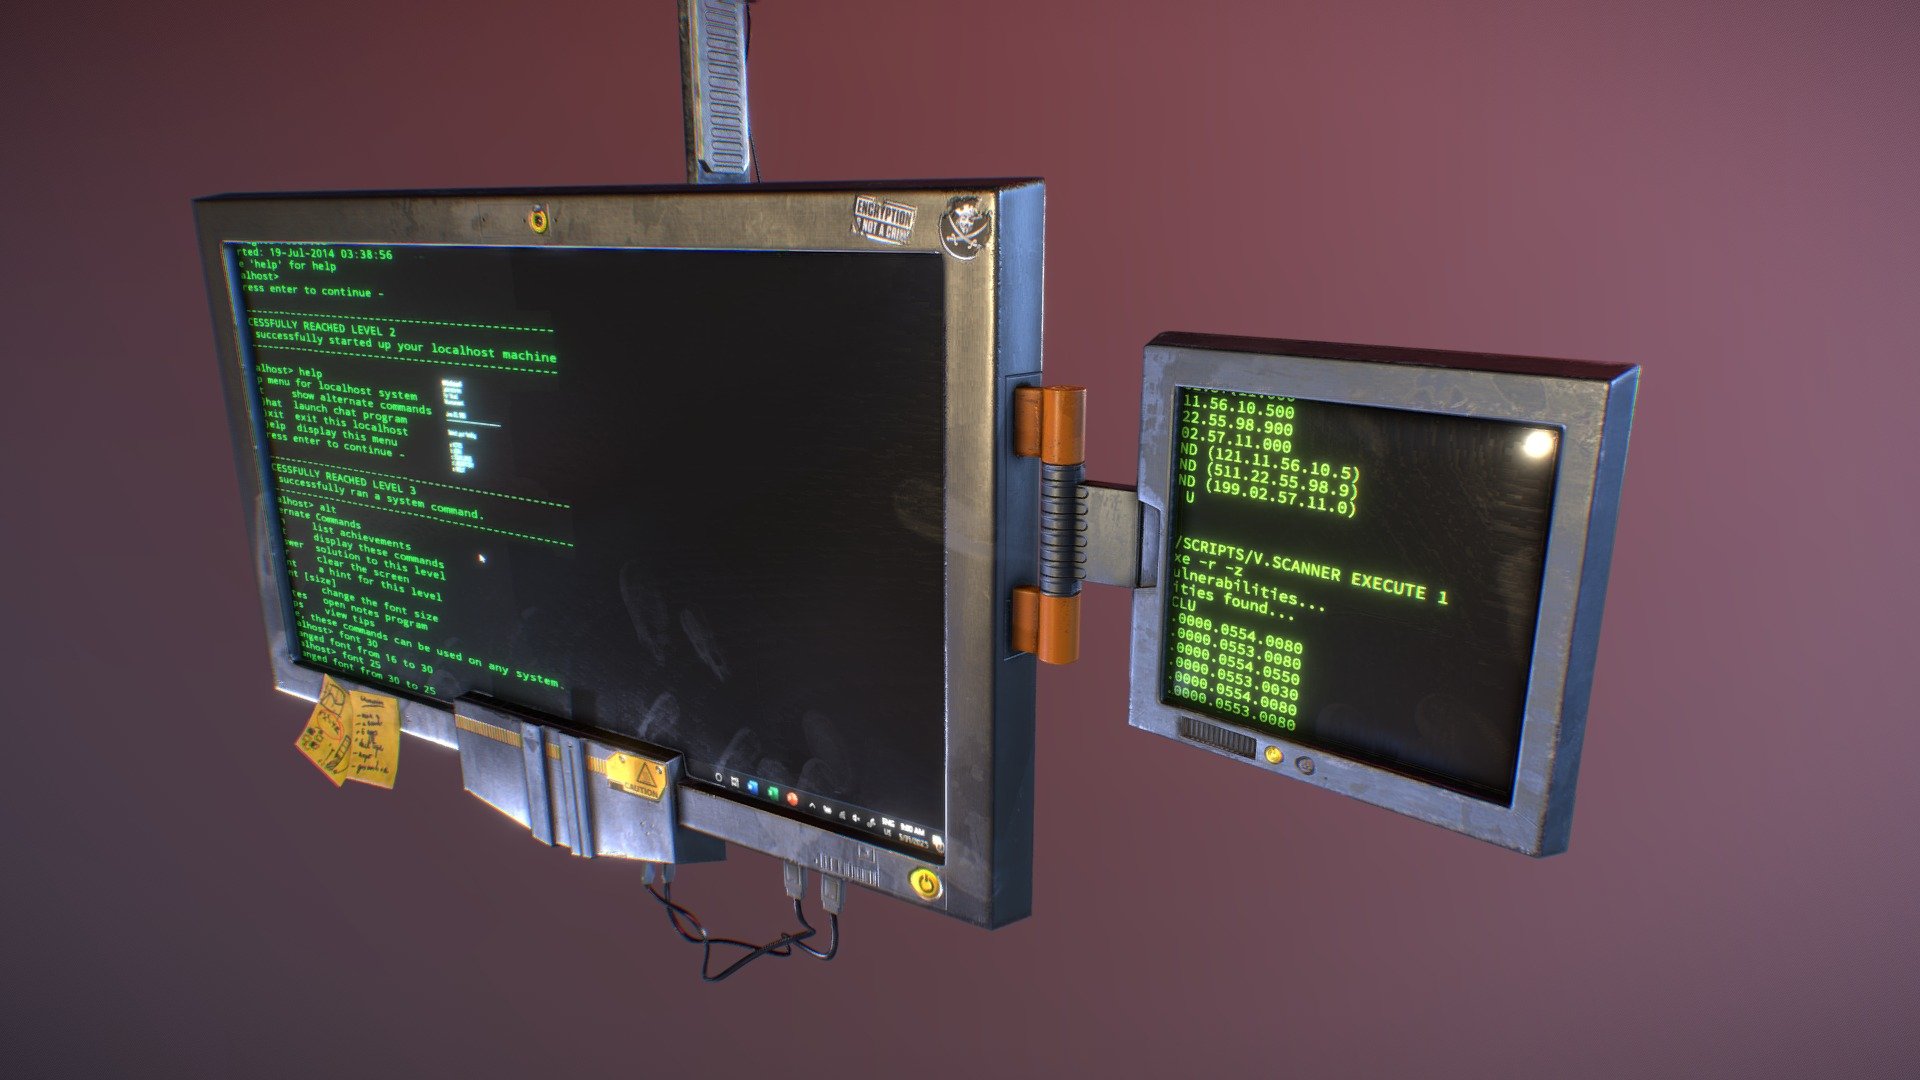 Mercenary hideout prop, "Dual screen monitor" - 3D model by alexdekeyser 3d model